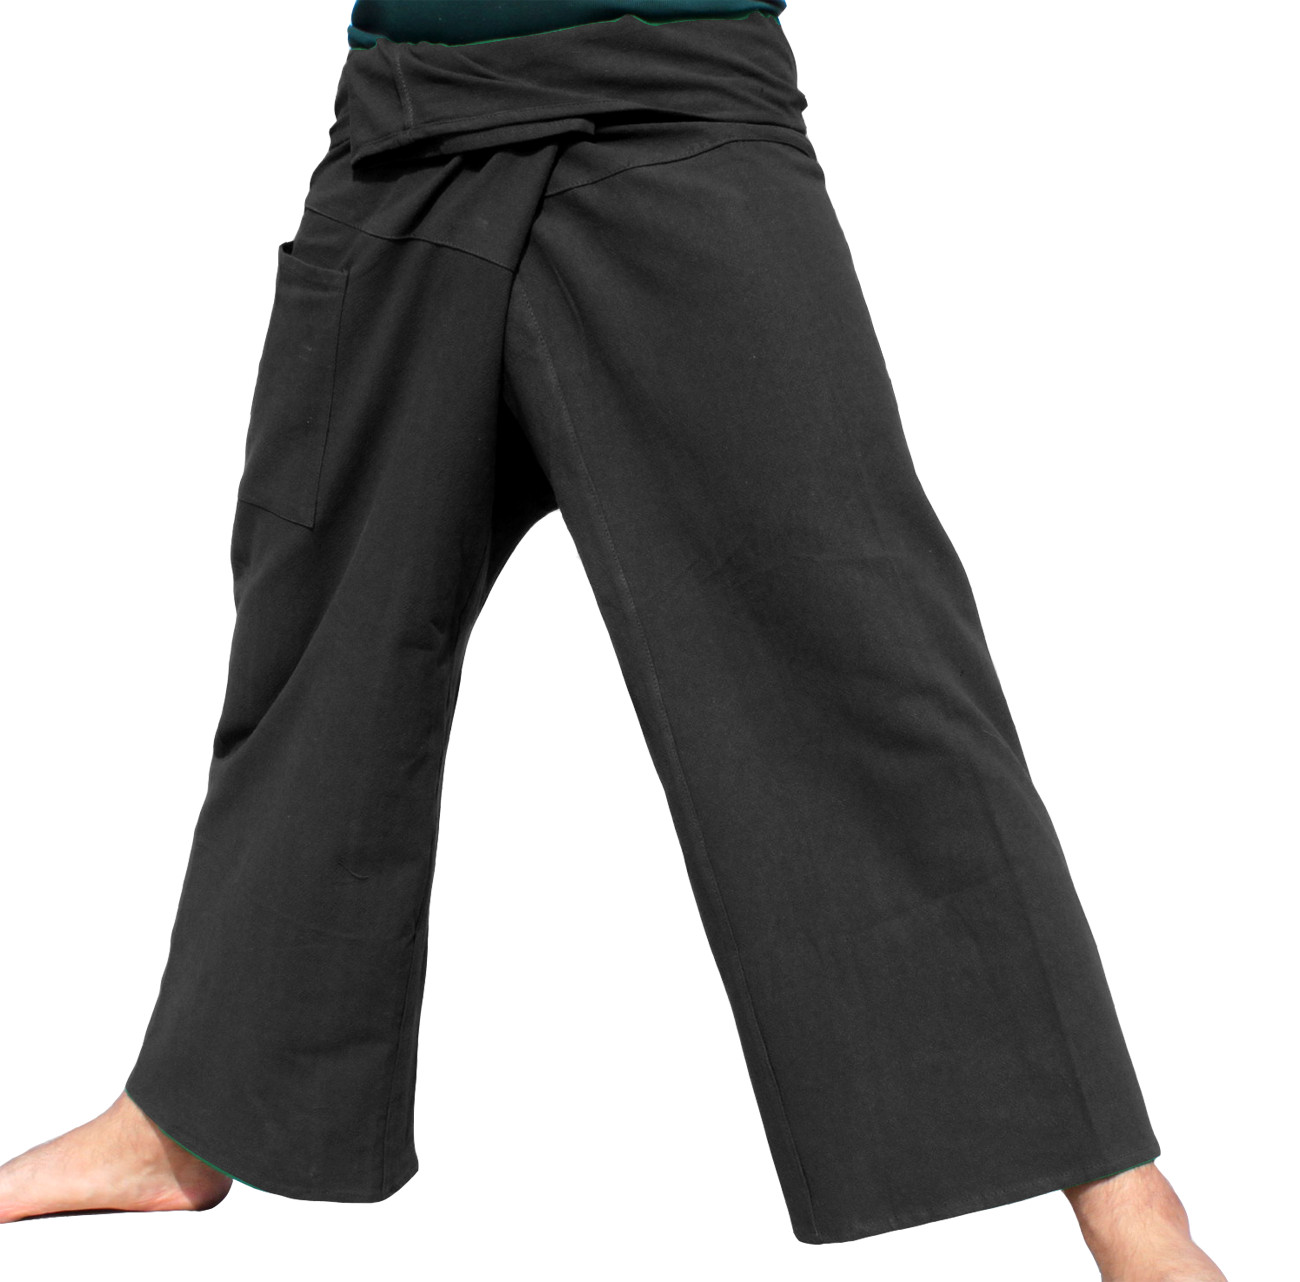 ร้านผ้าเมือง กางเกงสะดอ กางเกงเล กางเกงชาวเล กางเกงนวดสปา กางเกงโยคะ กางเกงผ้าฝ้ายแท้ กางเกงตังเก กางเกงขาก๊วย ไซด์ S - XXL